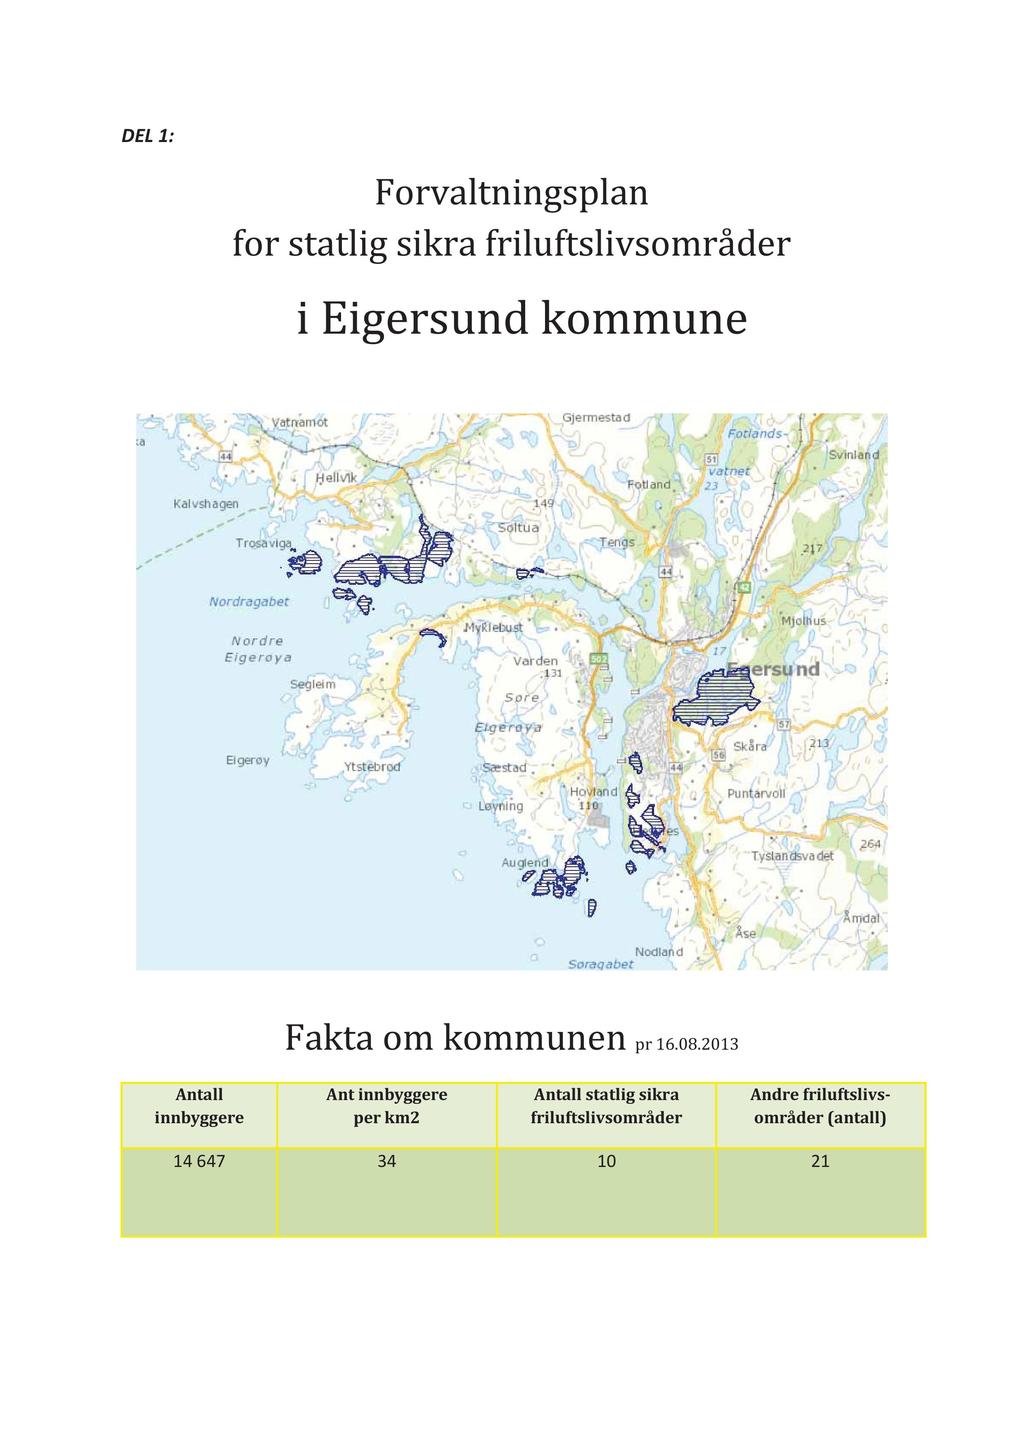 DEL1: Forvaltningsplan for statlig sikra friluftslivsområder i Eigersundkommune Faktaom kommunen pr 16.08.